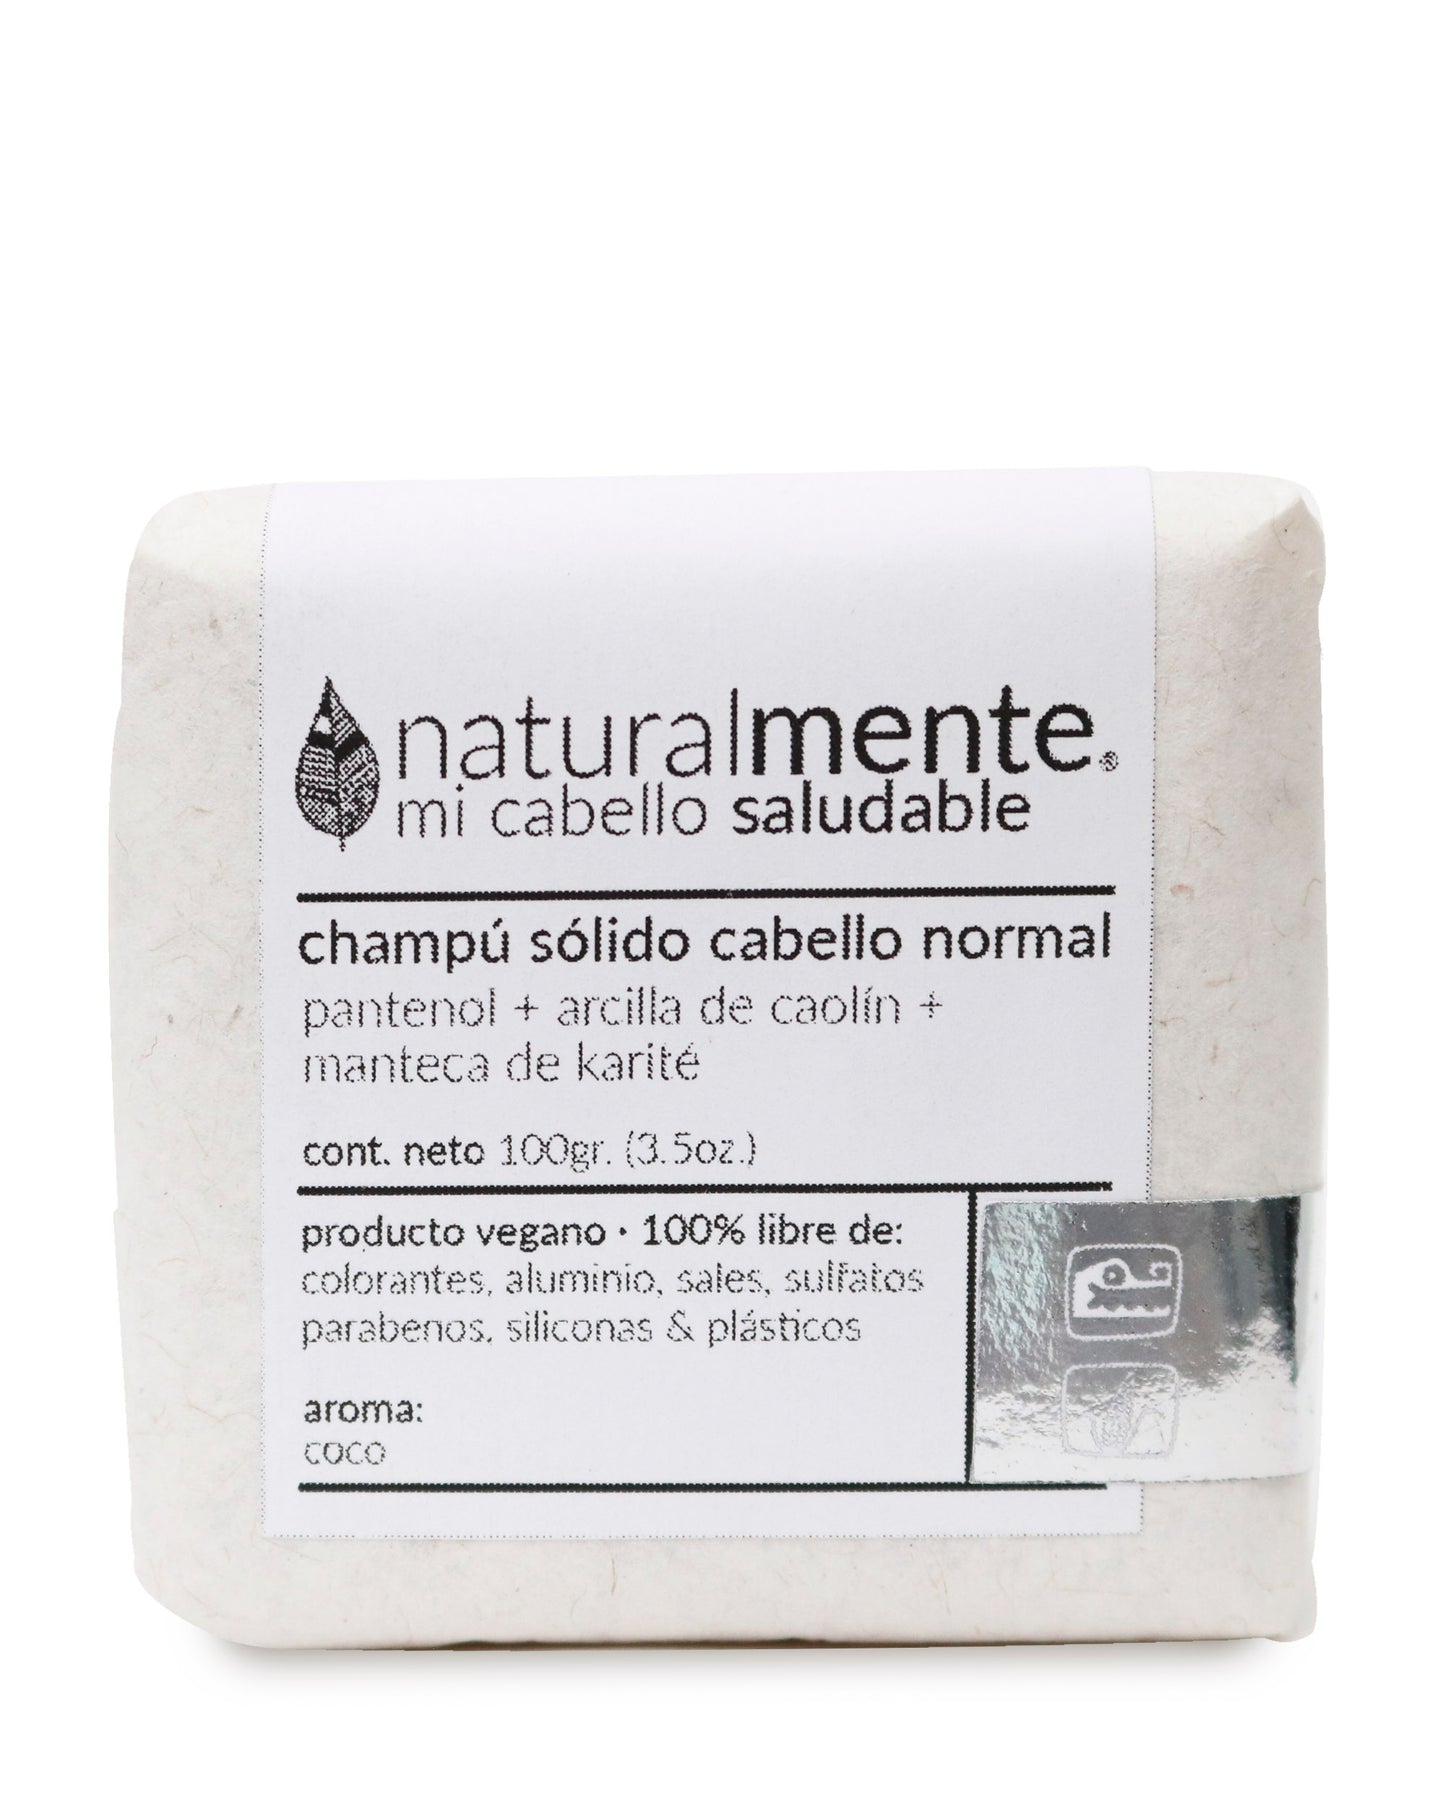 NATURALMENTE Champú Sólido Cabello Normal - Pantenol + Caolín + Karité - Aroma Coco 100 gr.